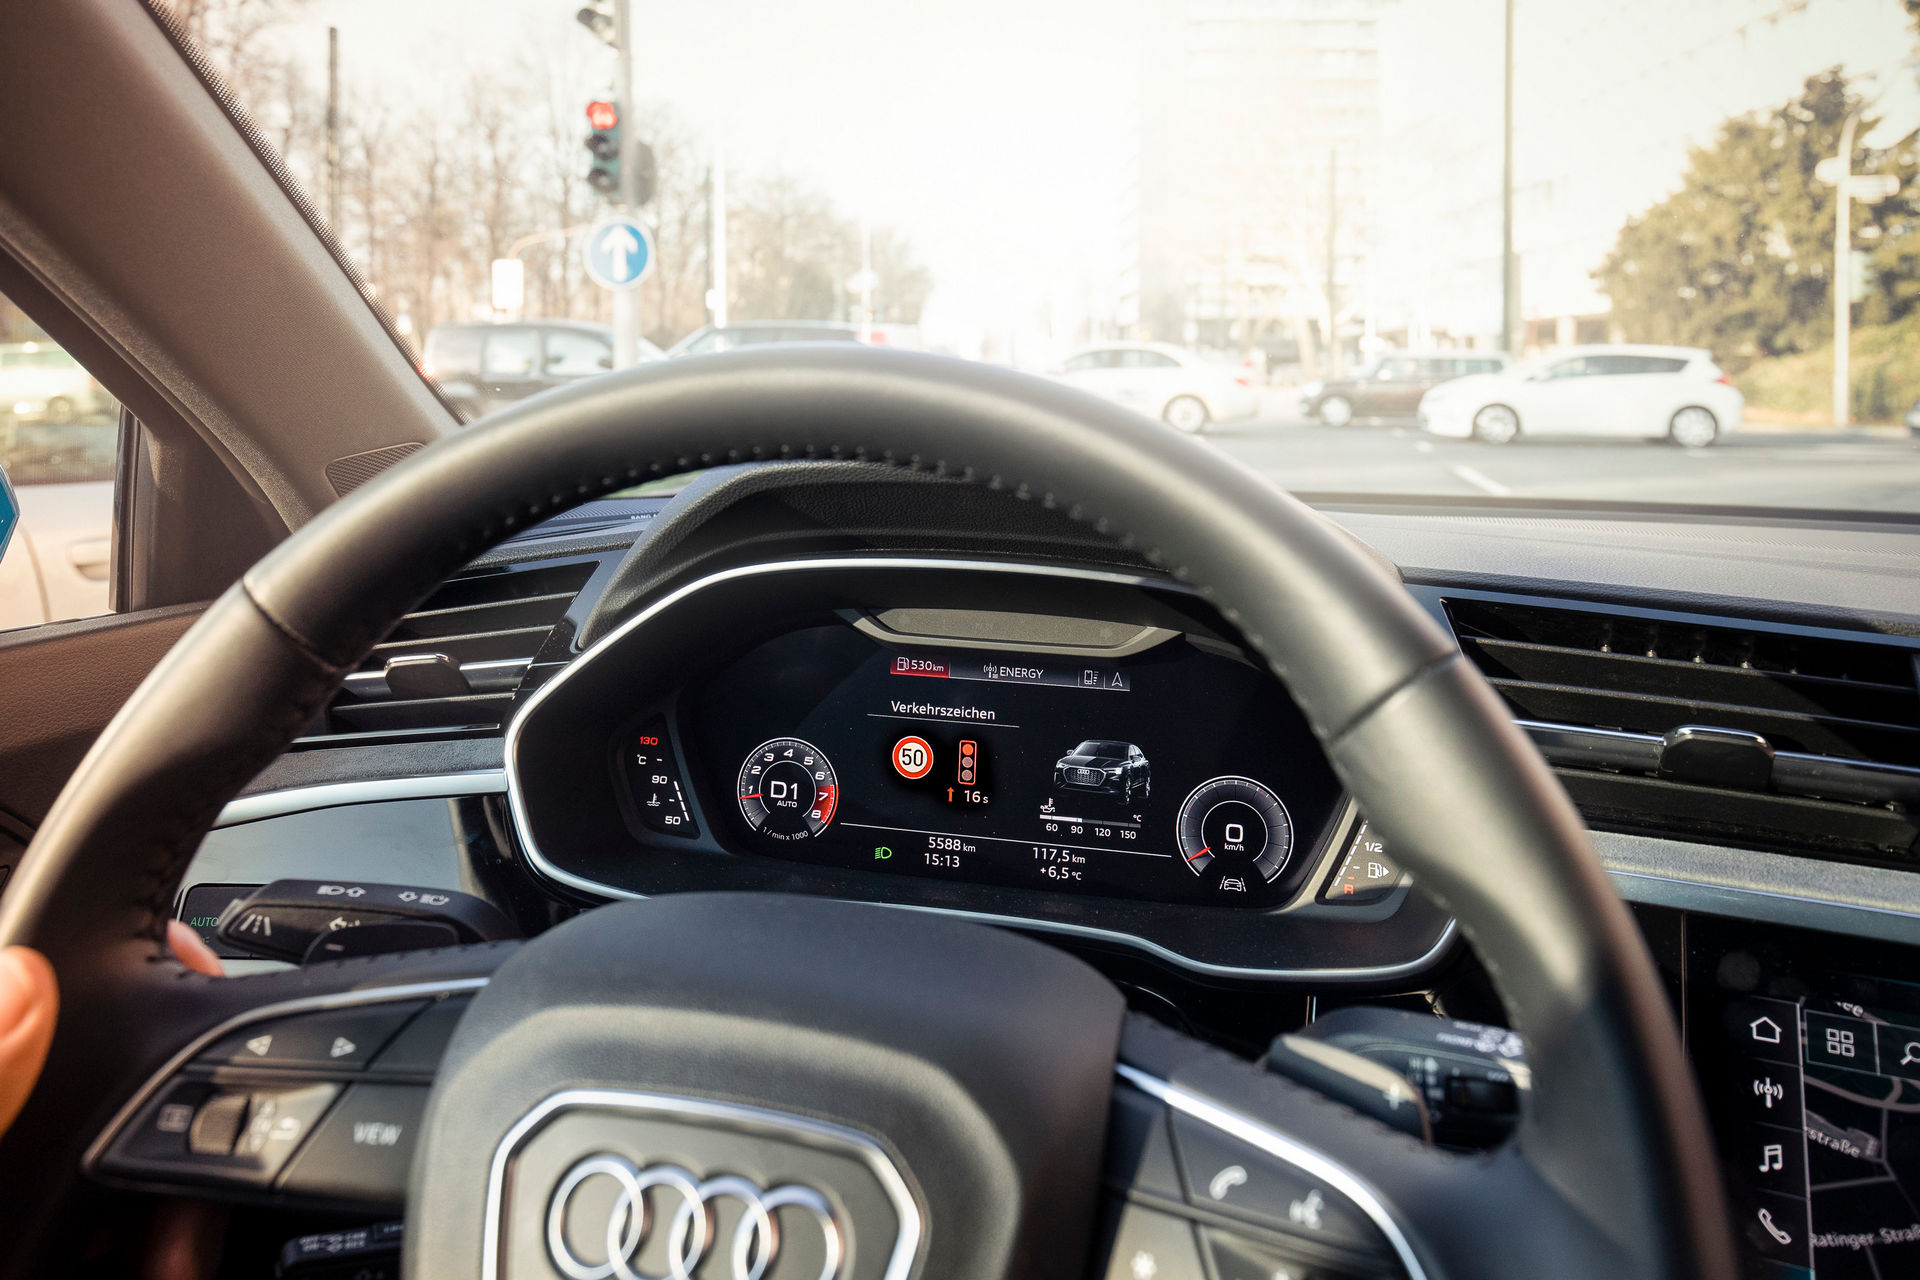 Màn hình hiển thị hệ thống thông tin đèn giao thông của Audi.